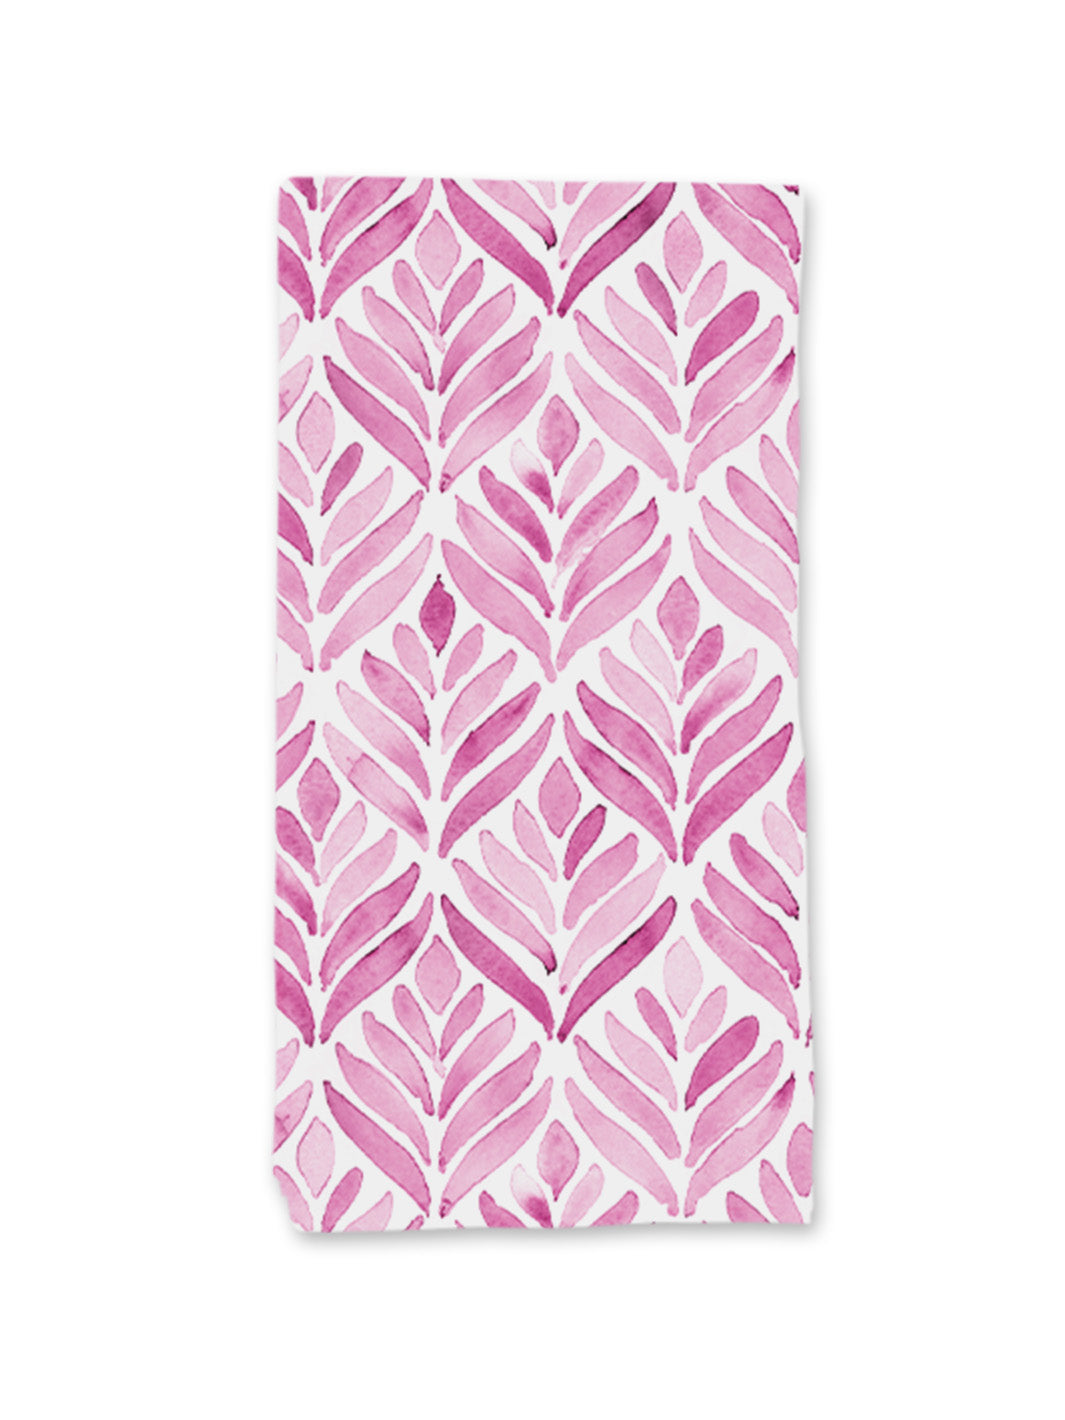 Single Napkin - Pink watercolour print